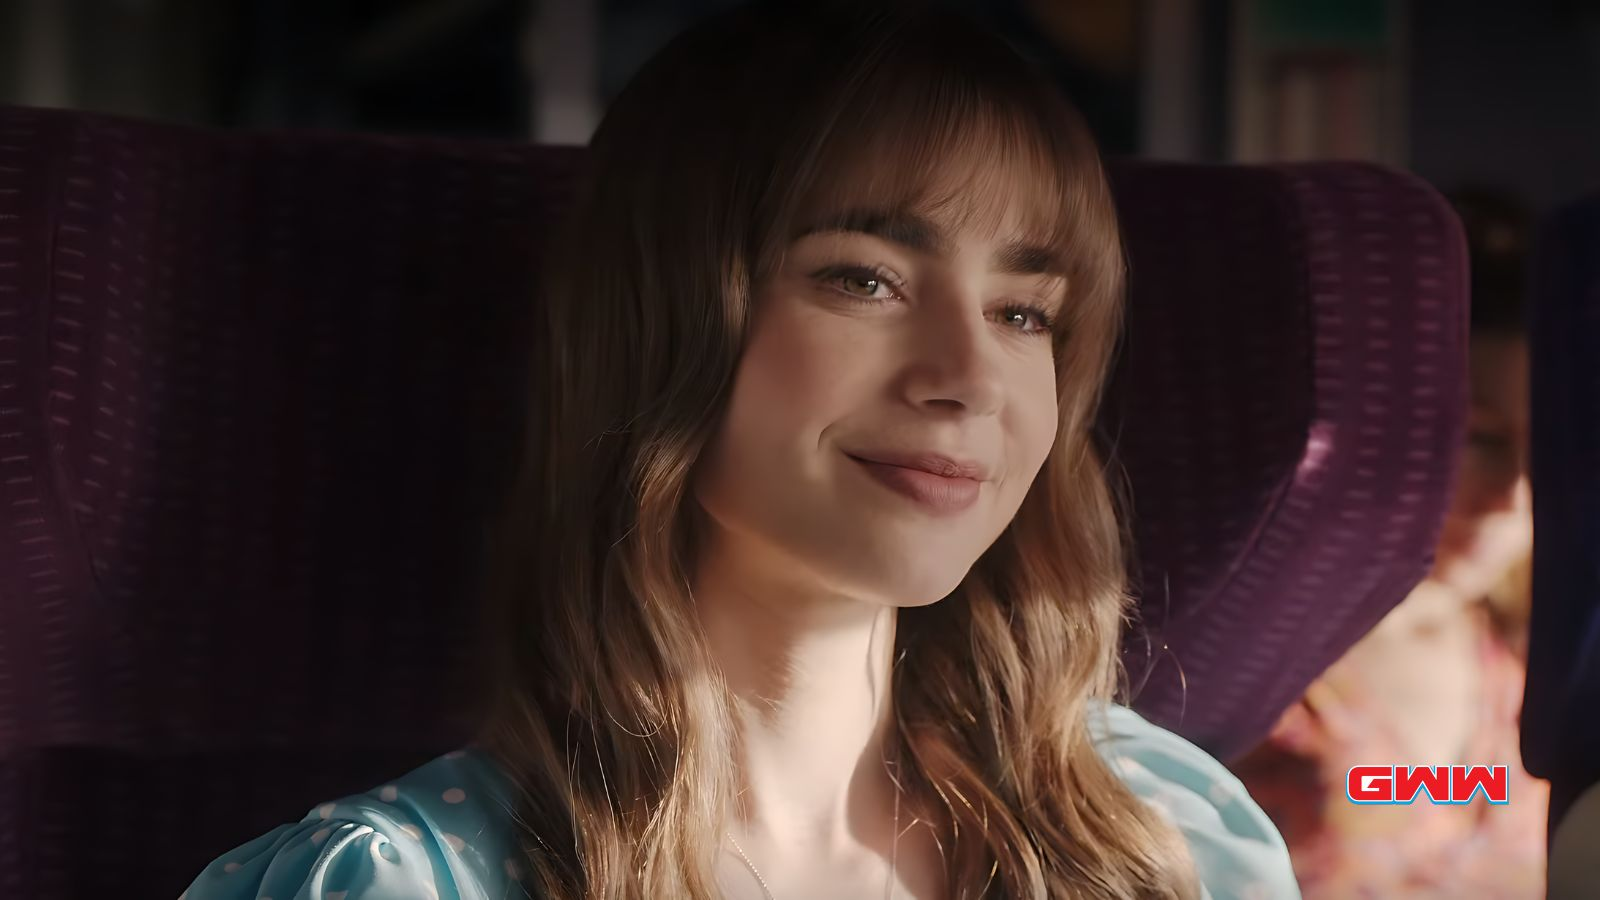 Emily sonriendo mientras está sentada en un tren con un asiento morado.